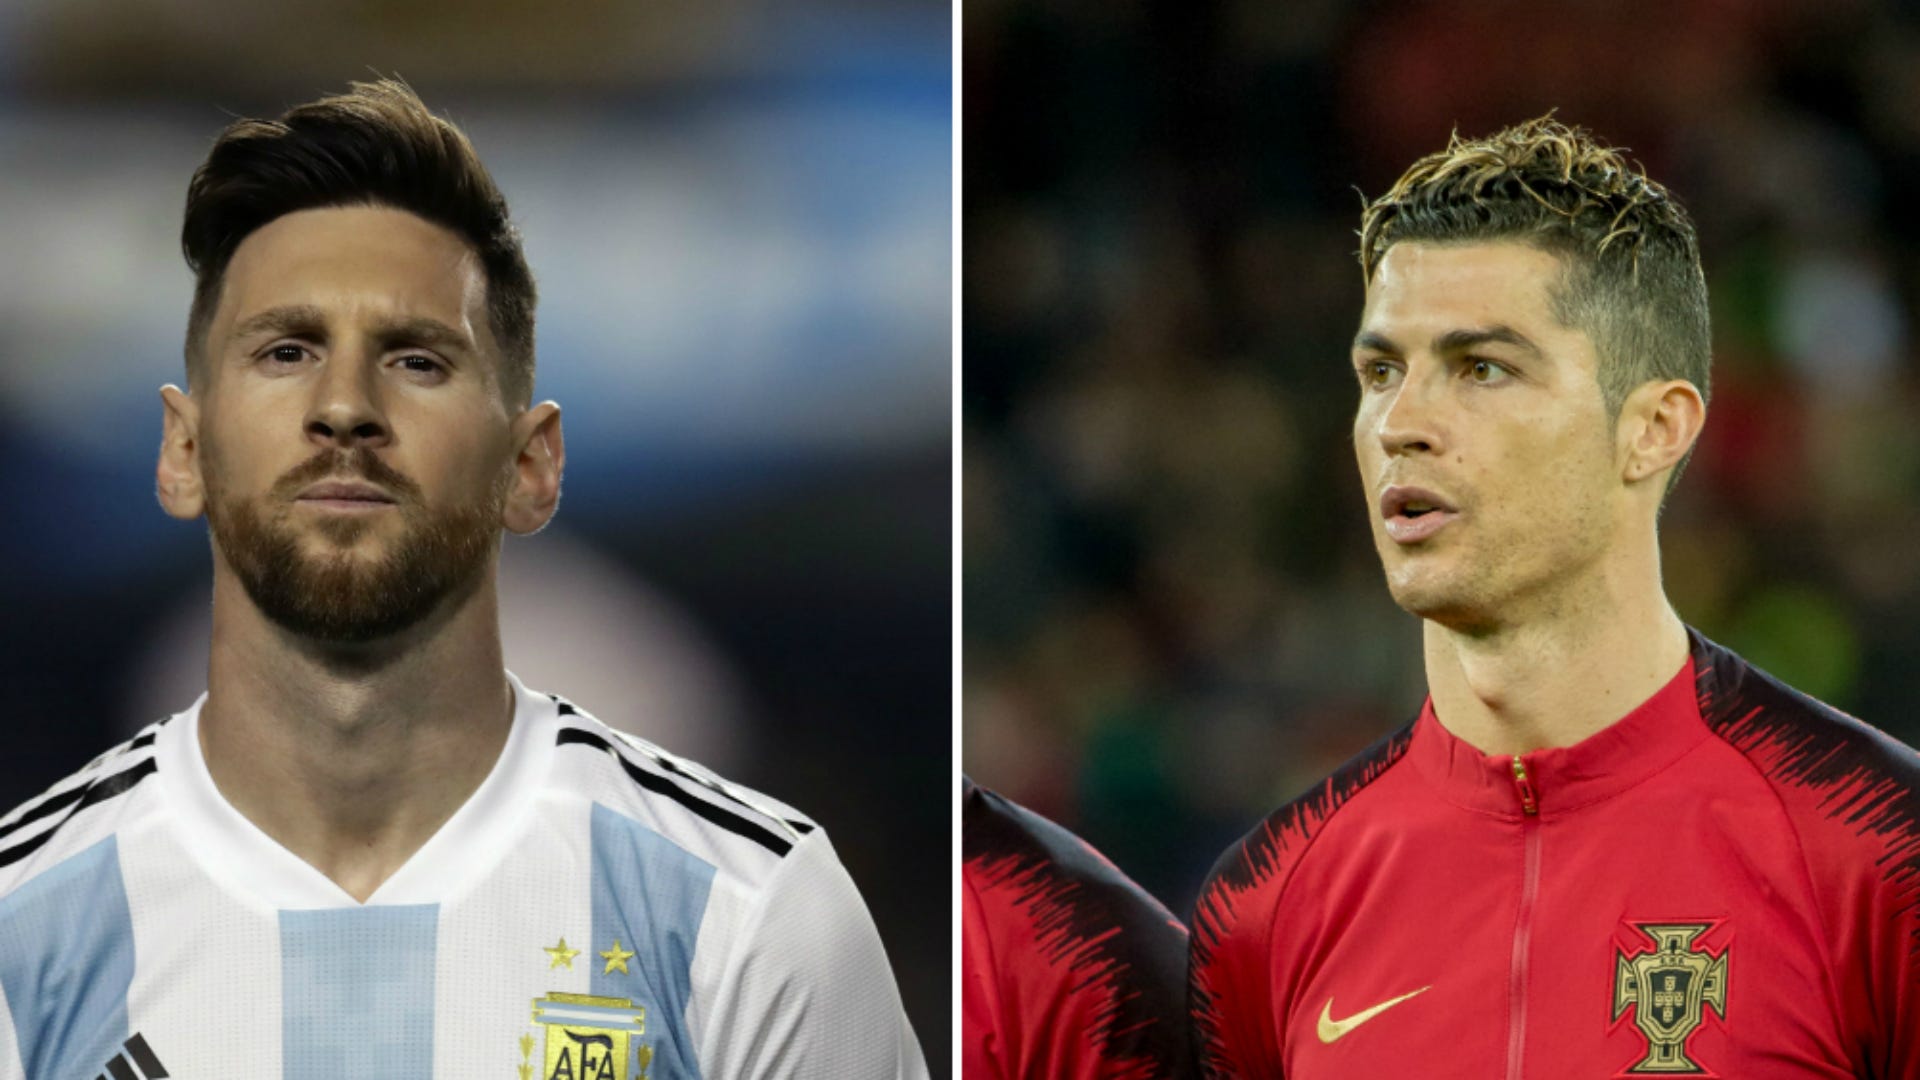 Esta é a diferença de Cristiano Ronaldo e Lionel Messi!😳 - Tal  Curiosidades da Bola Gcuriosidadesdb A COMPARAÇÃO DOS CRAQUES: Gol de  Bicicleta de Lionel Messi: contra o Clermont, campeonato francês, subiu